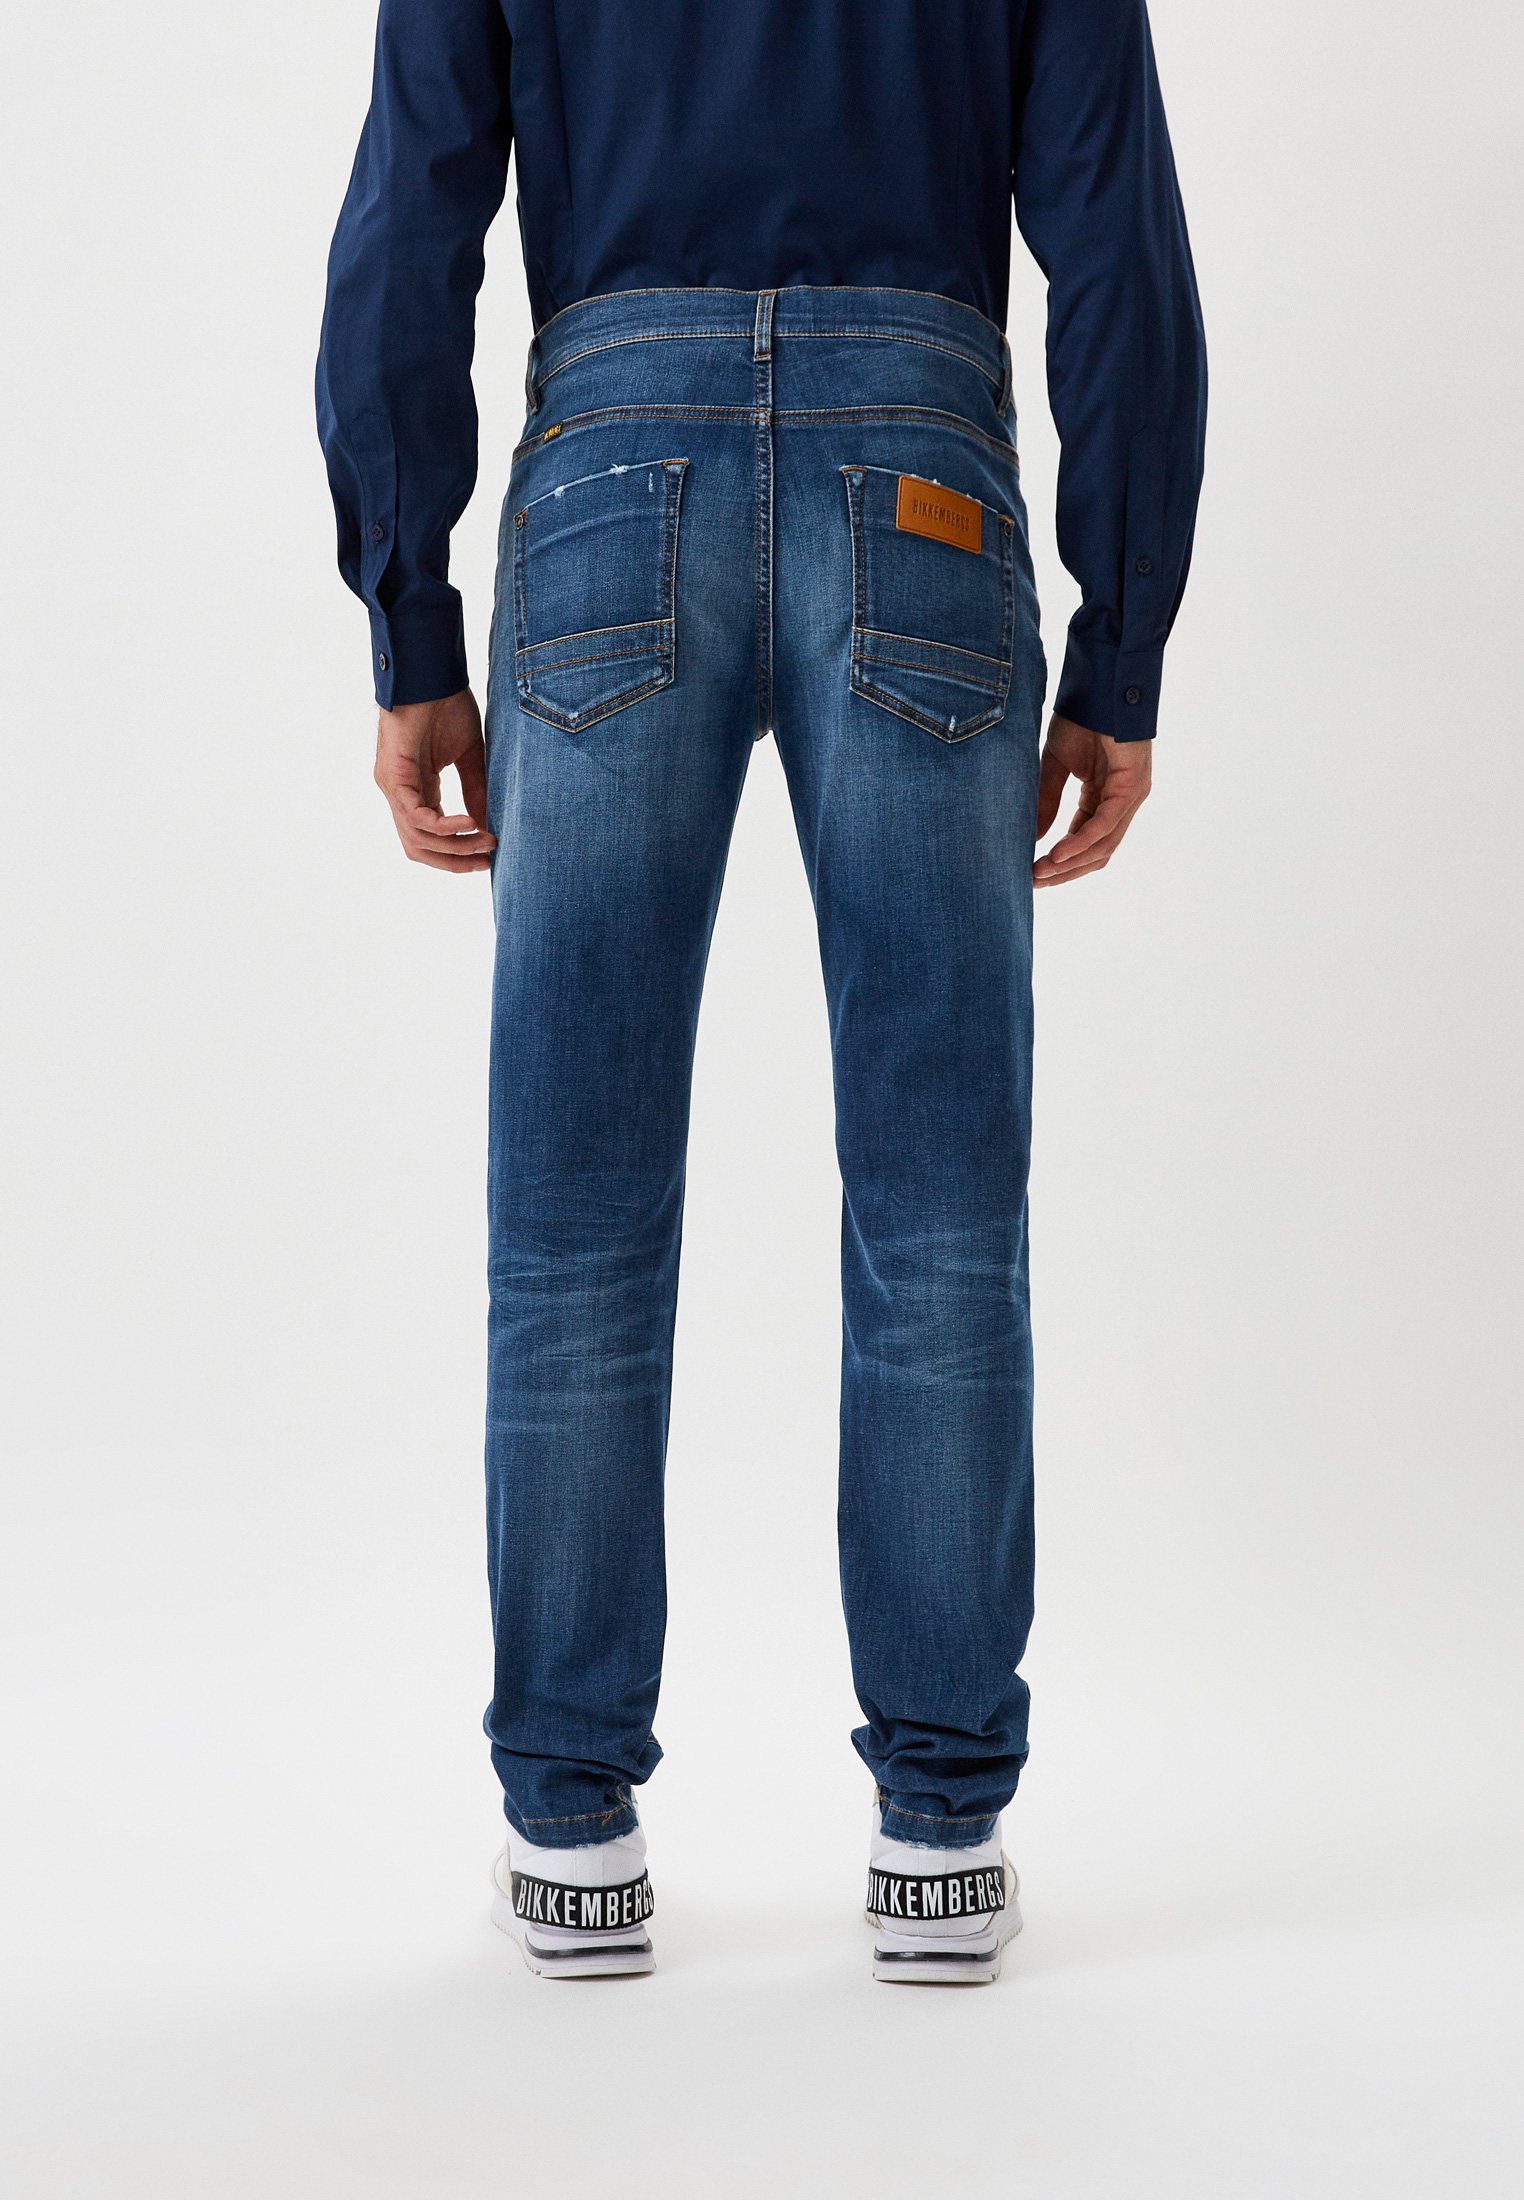 Мужские зауженные джинсы Bikkembergs (Биккембергс) C Q 111 01 S 3511: изображение 10